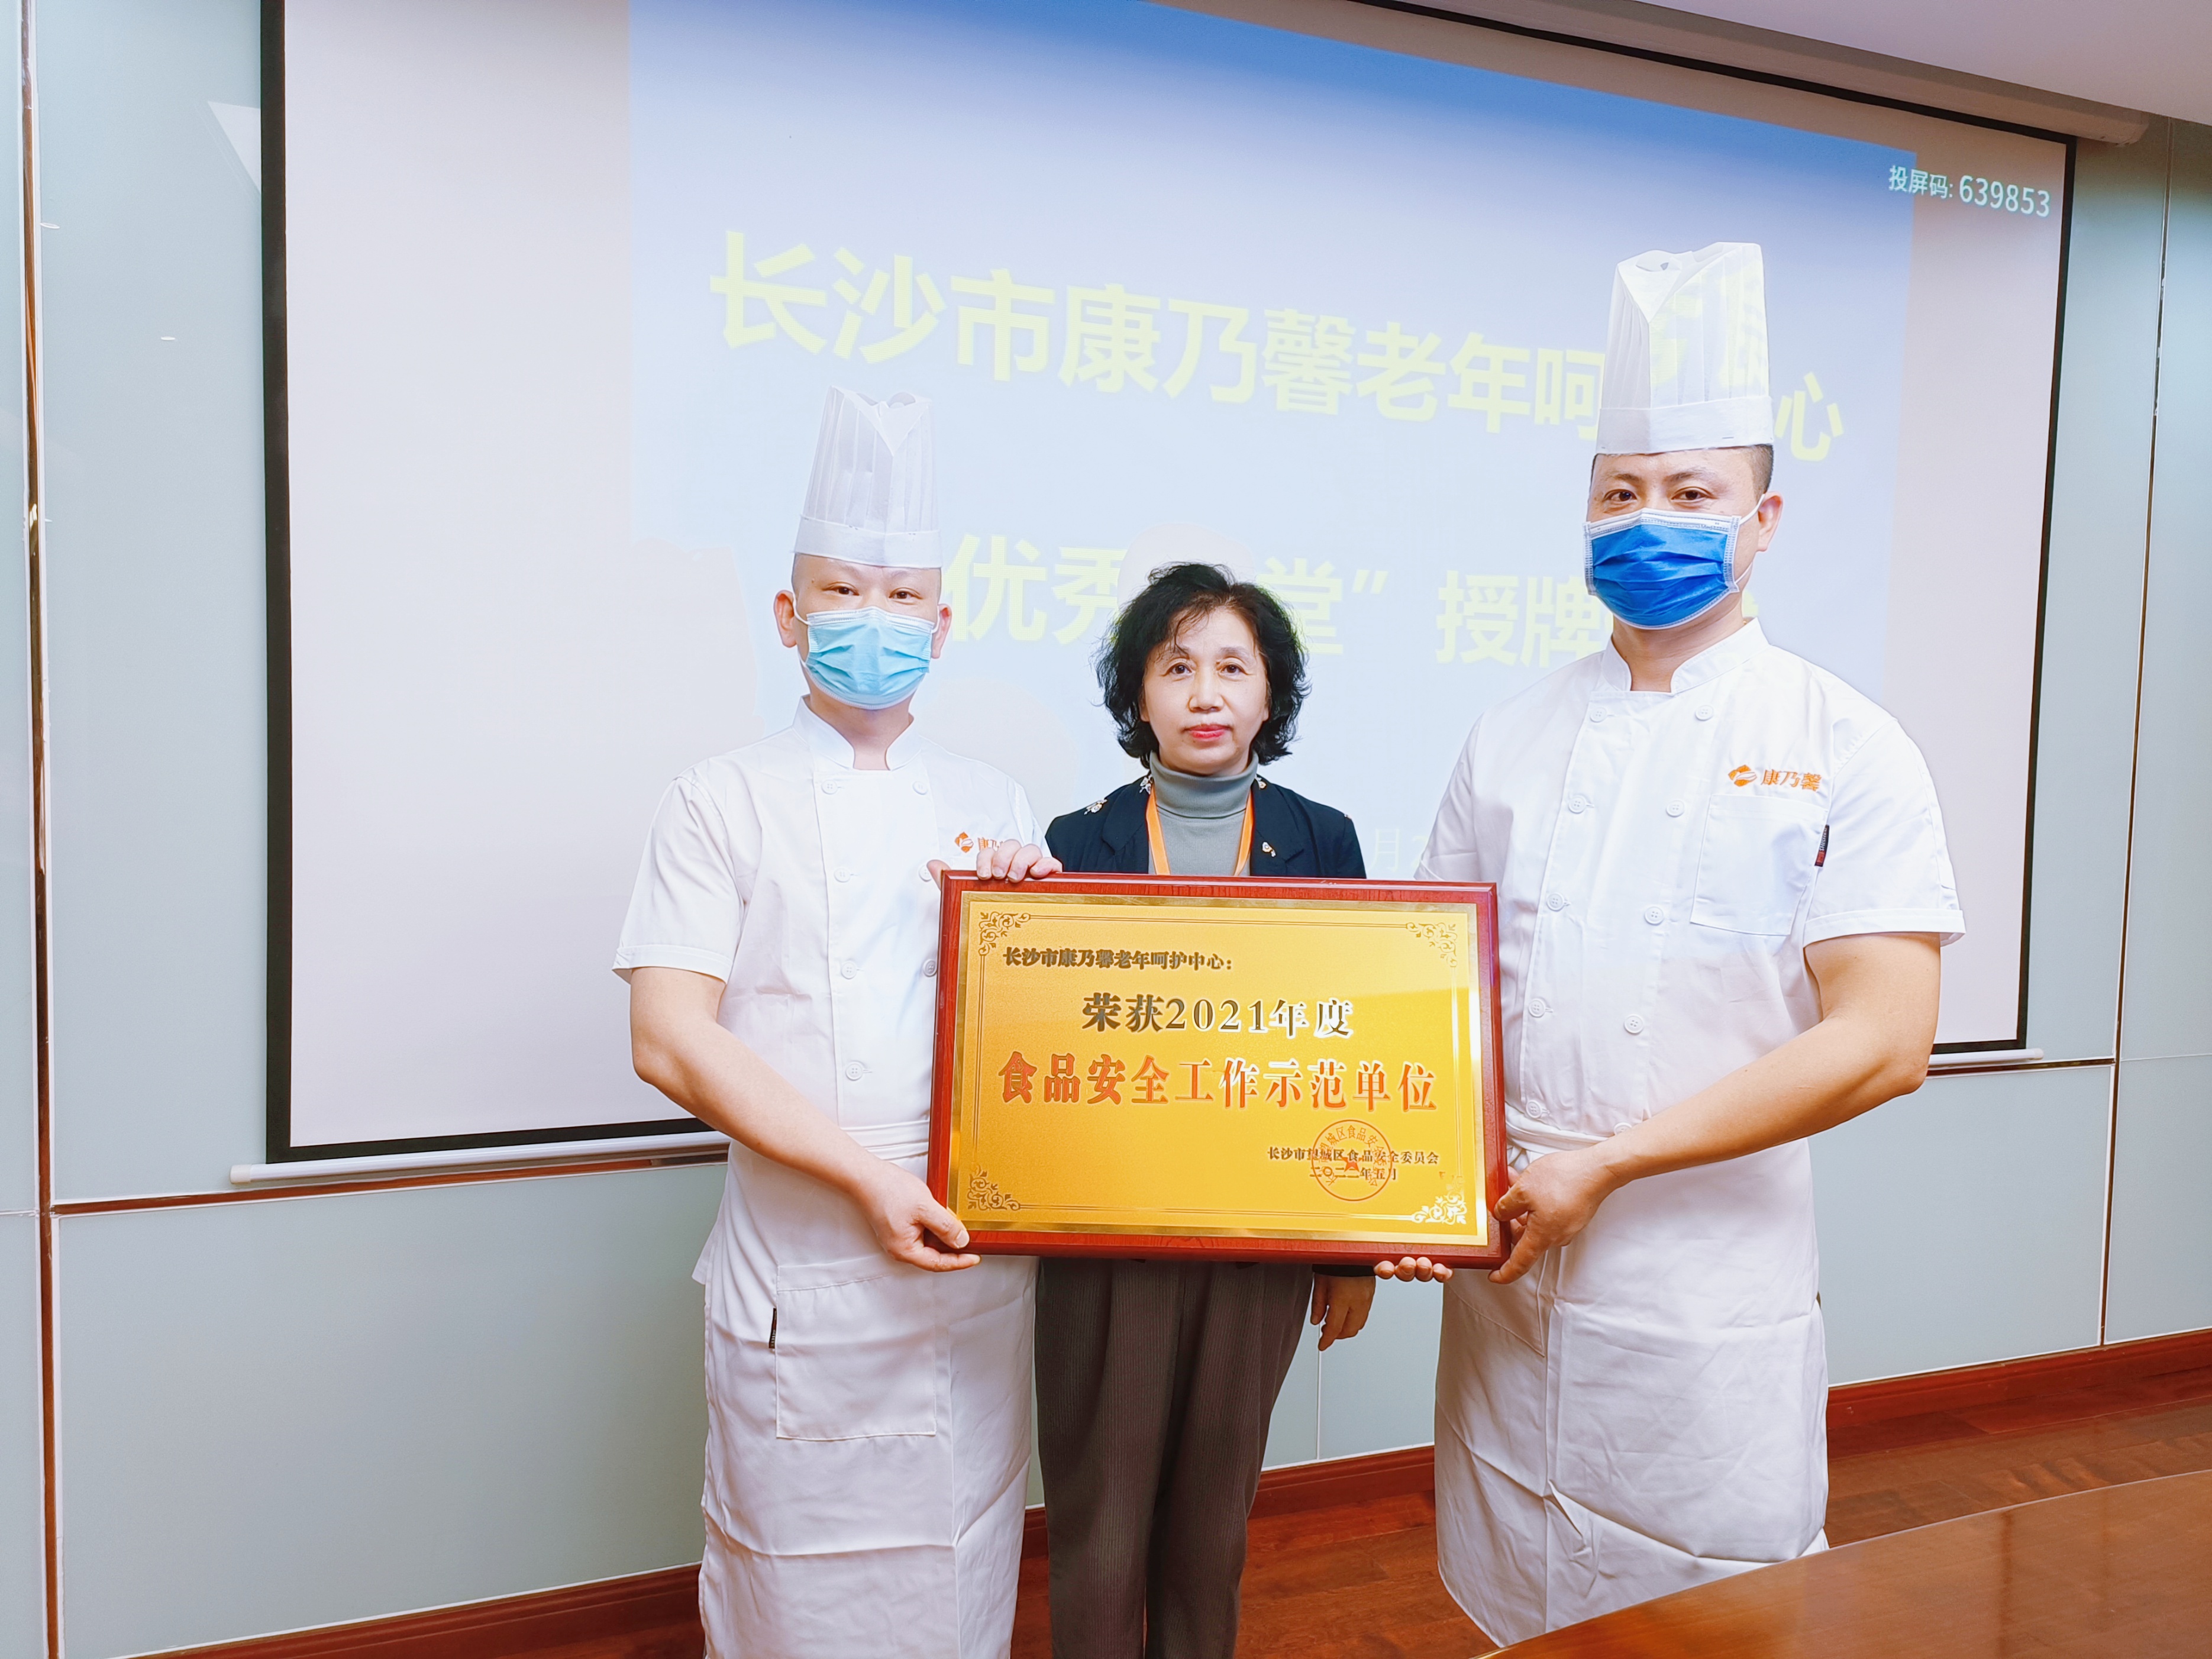 长沙市康乃馨老年呵护中心荣获“2021食品安全工作示范单位”称号